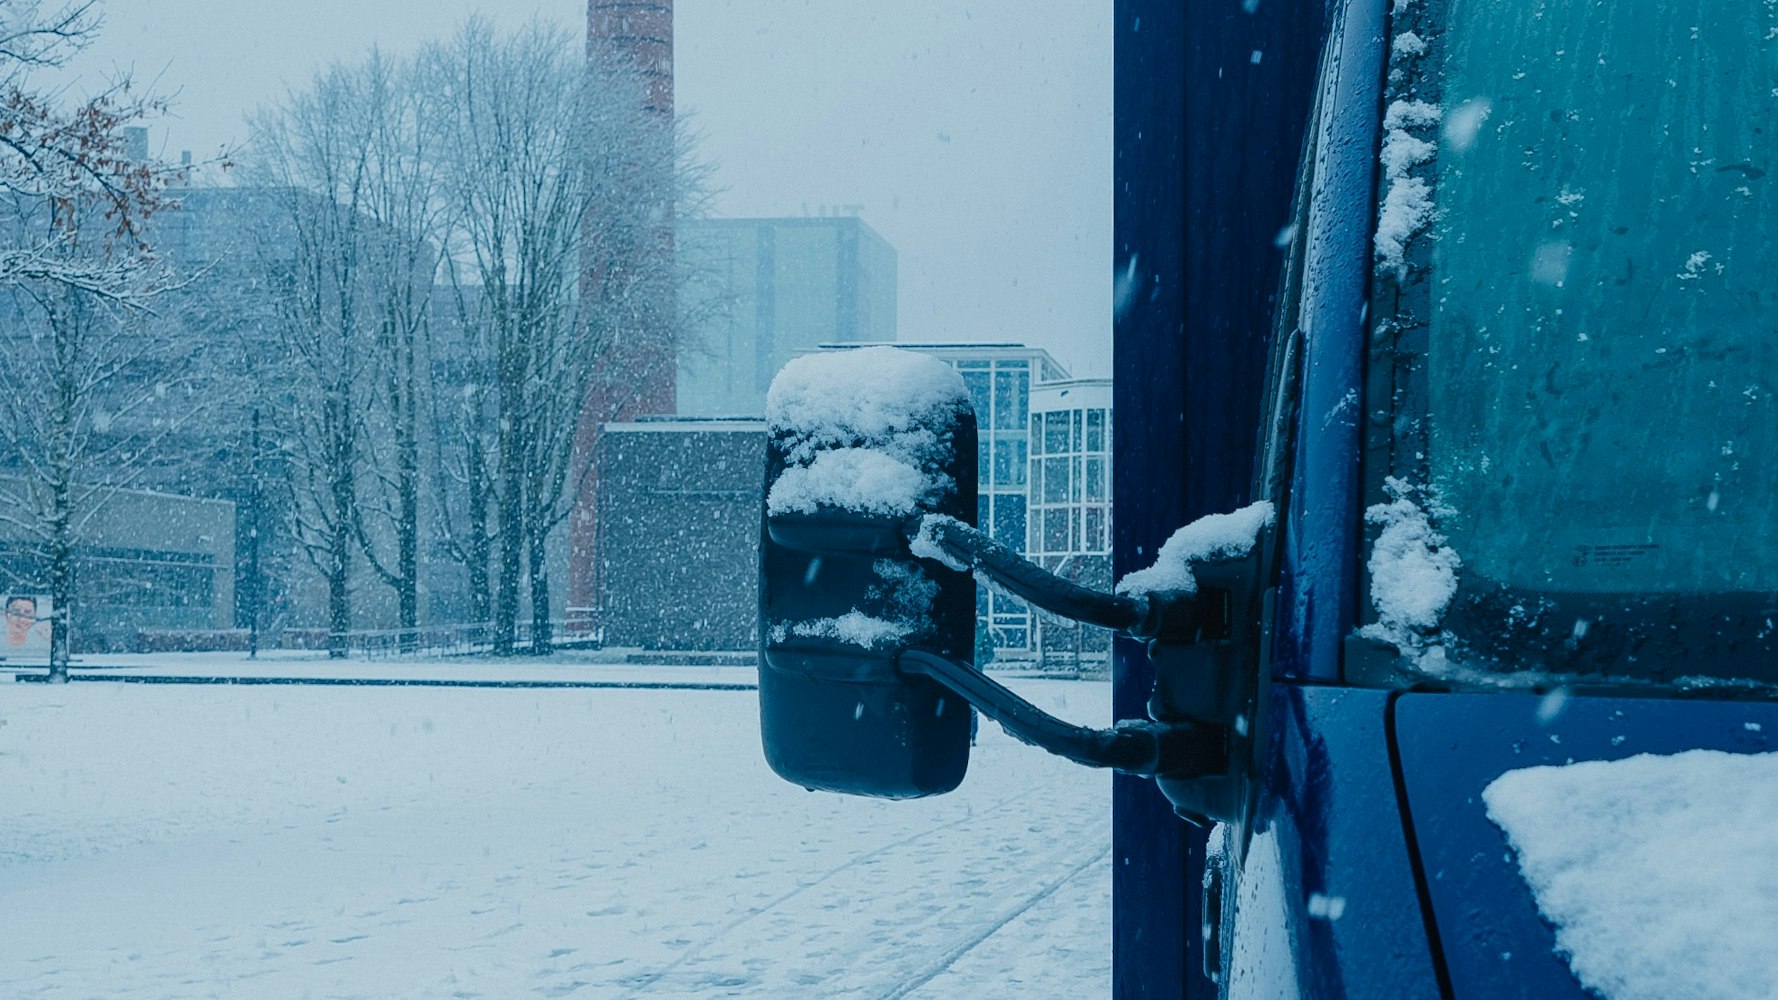 blauwe bus staat in amsterdam, hevige sneeuwval